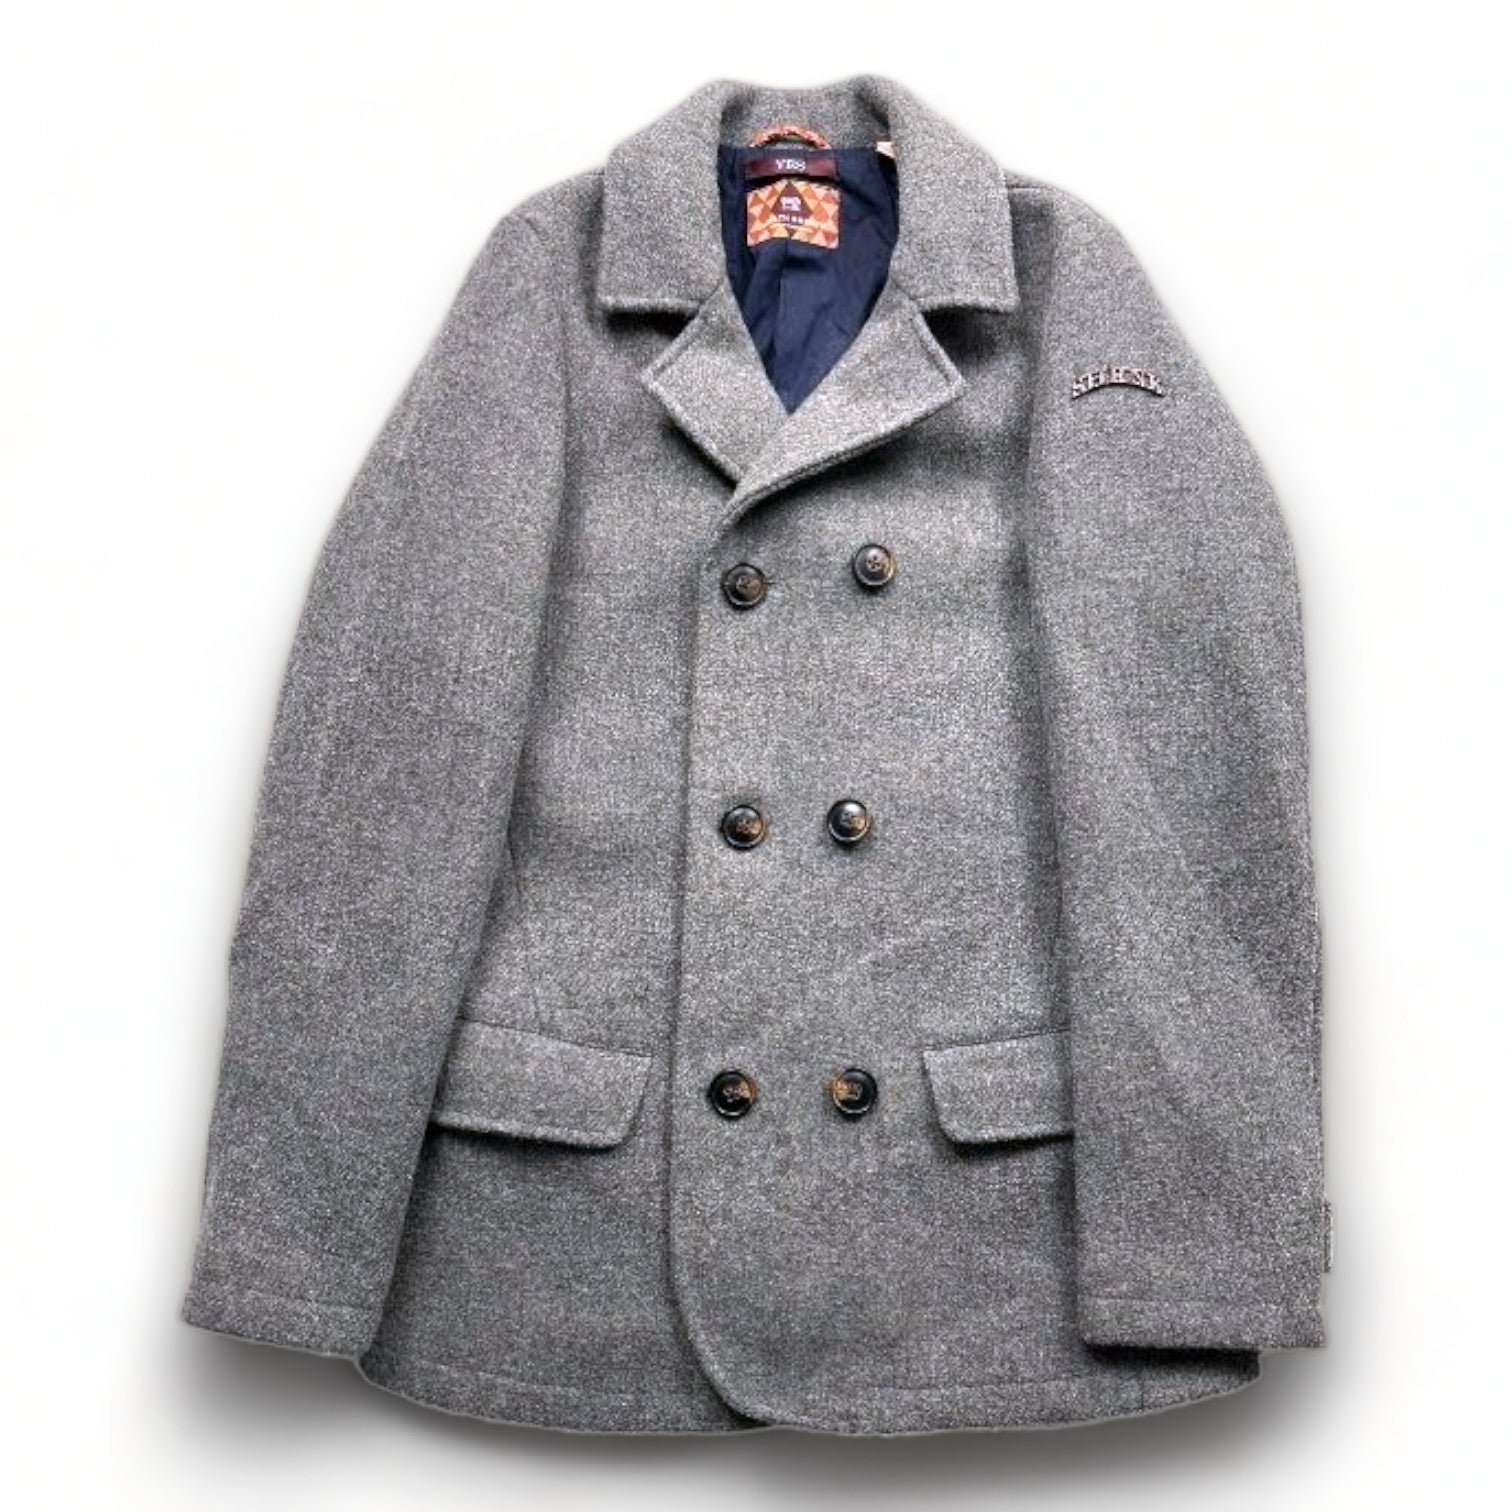 SCOTCH SHRUNK - Manteau gris en laine - 14 ans